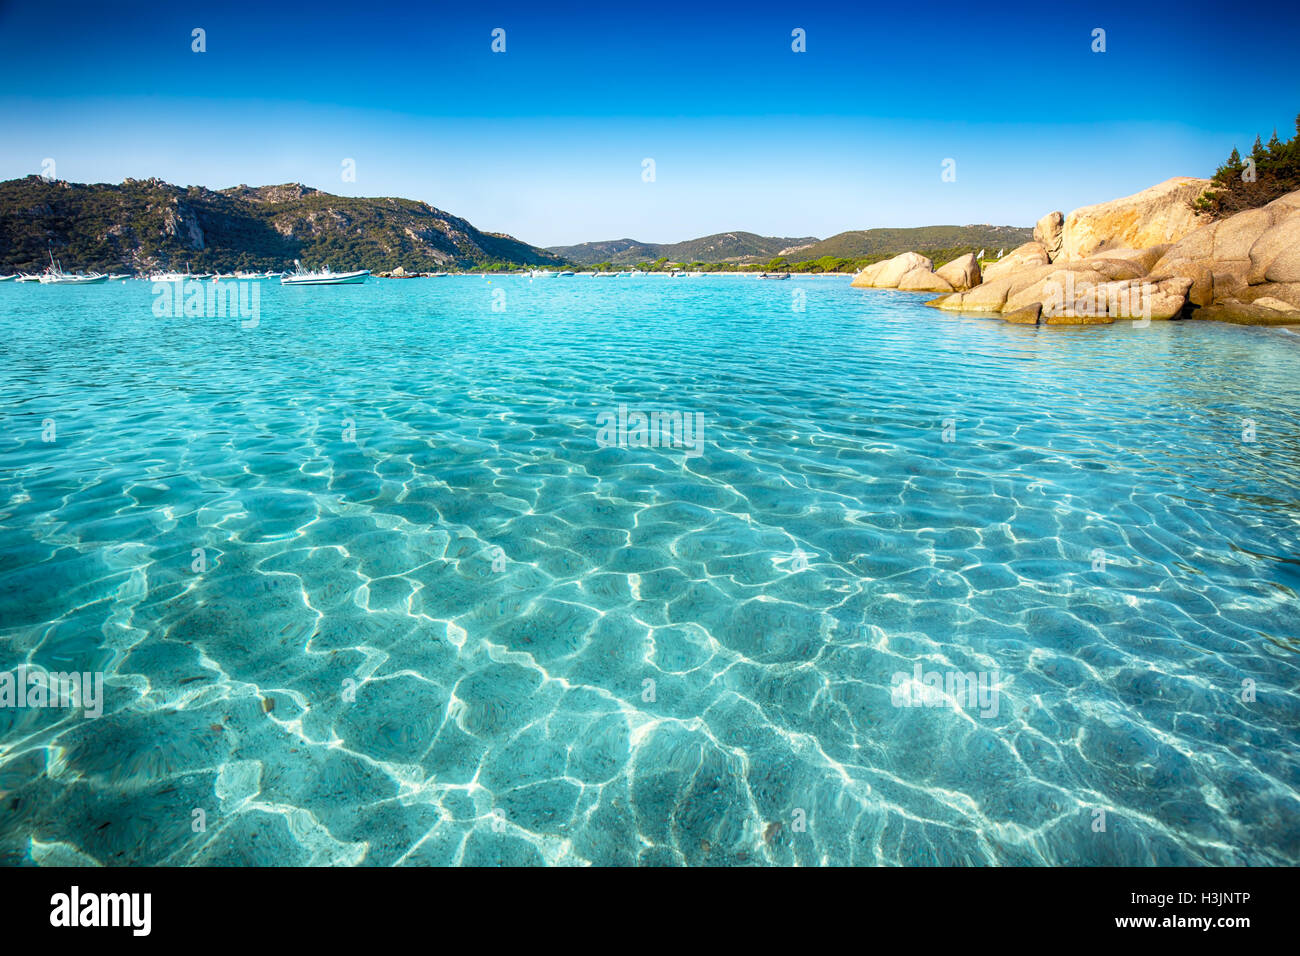 Plage de Santa Giulia avec roches rouges, de pins et d'azur de l'eau claire, Corse, France. Banque D'Images